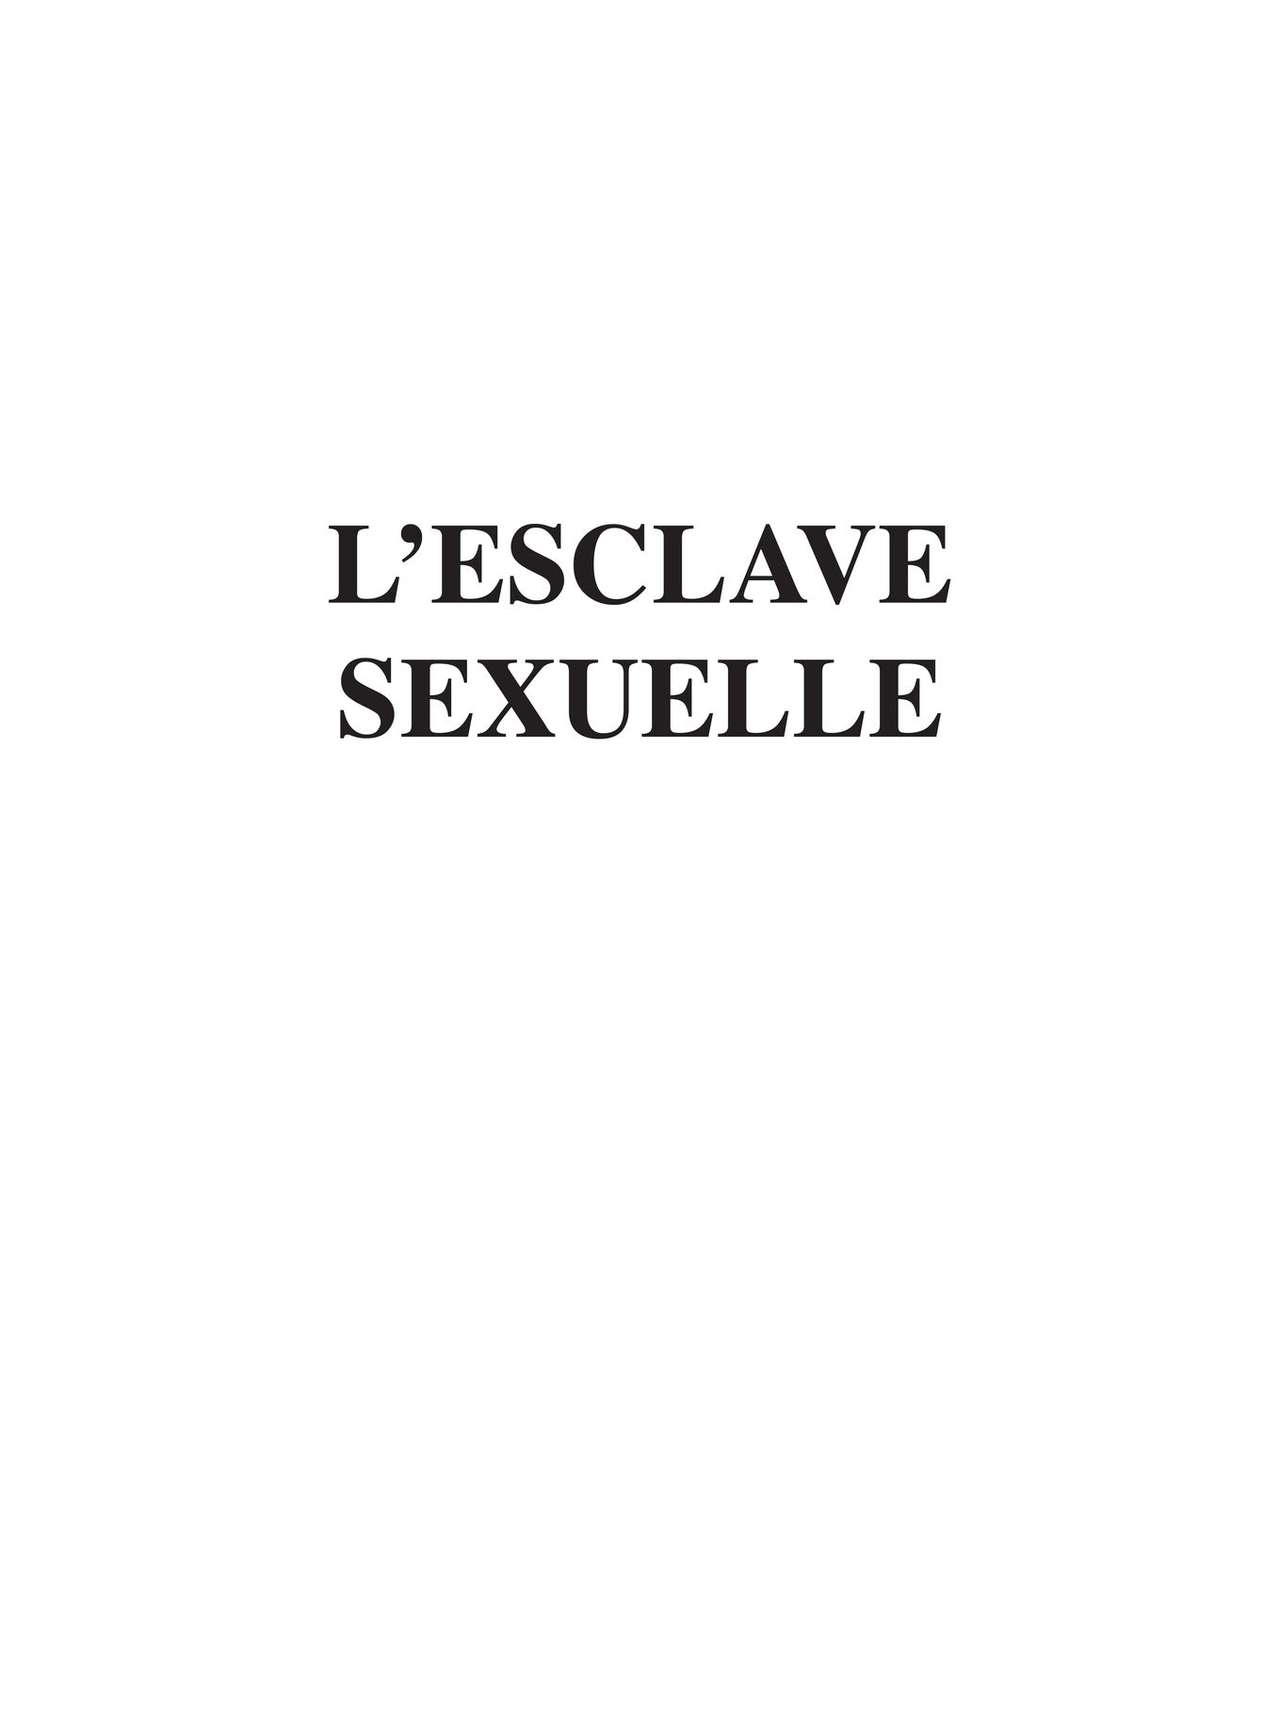 L‘esclave sexuelle numero d'image 2